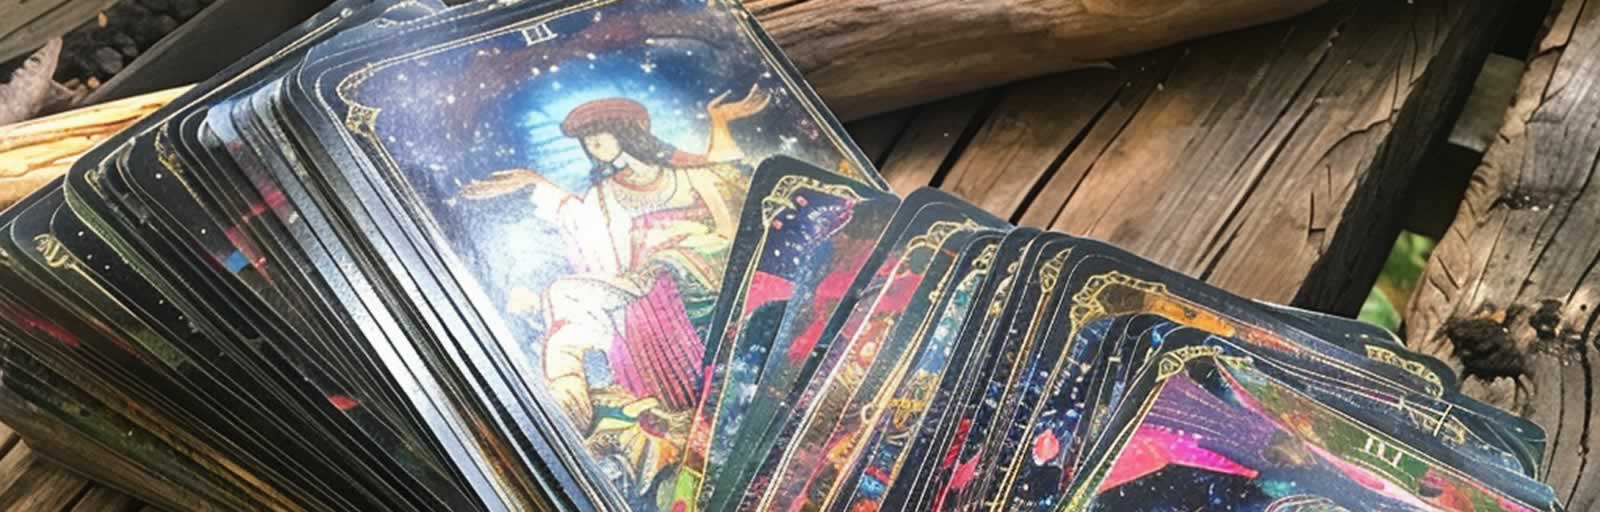 Healing Light, Tarot and Spiritual Evolution: Deepening your spiritual journey through Tarot, Main image